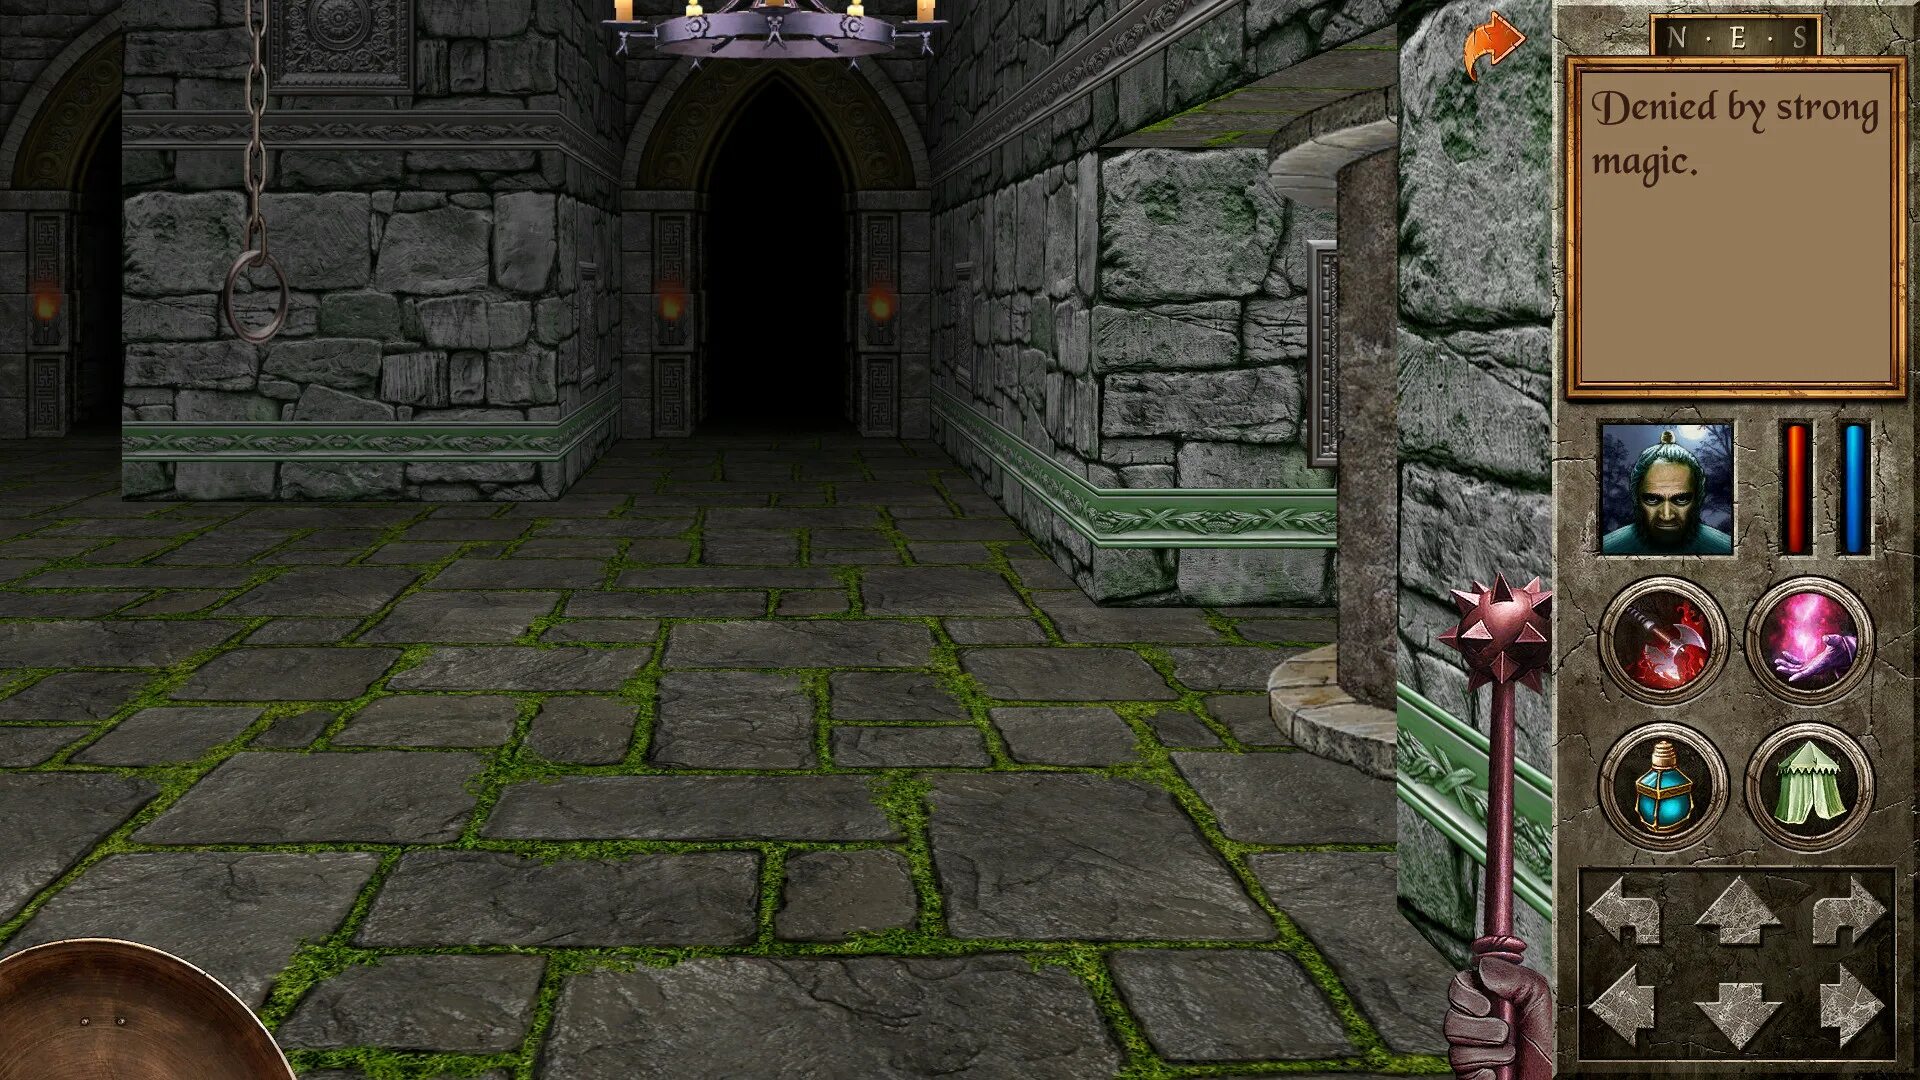 The Quest игра Redshift. Quest 2006. Quest игра 2000. The Quest (2006 Video game). Игры похожие на игру quest